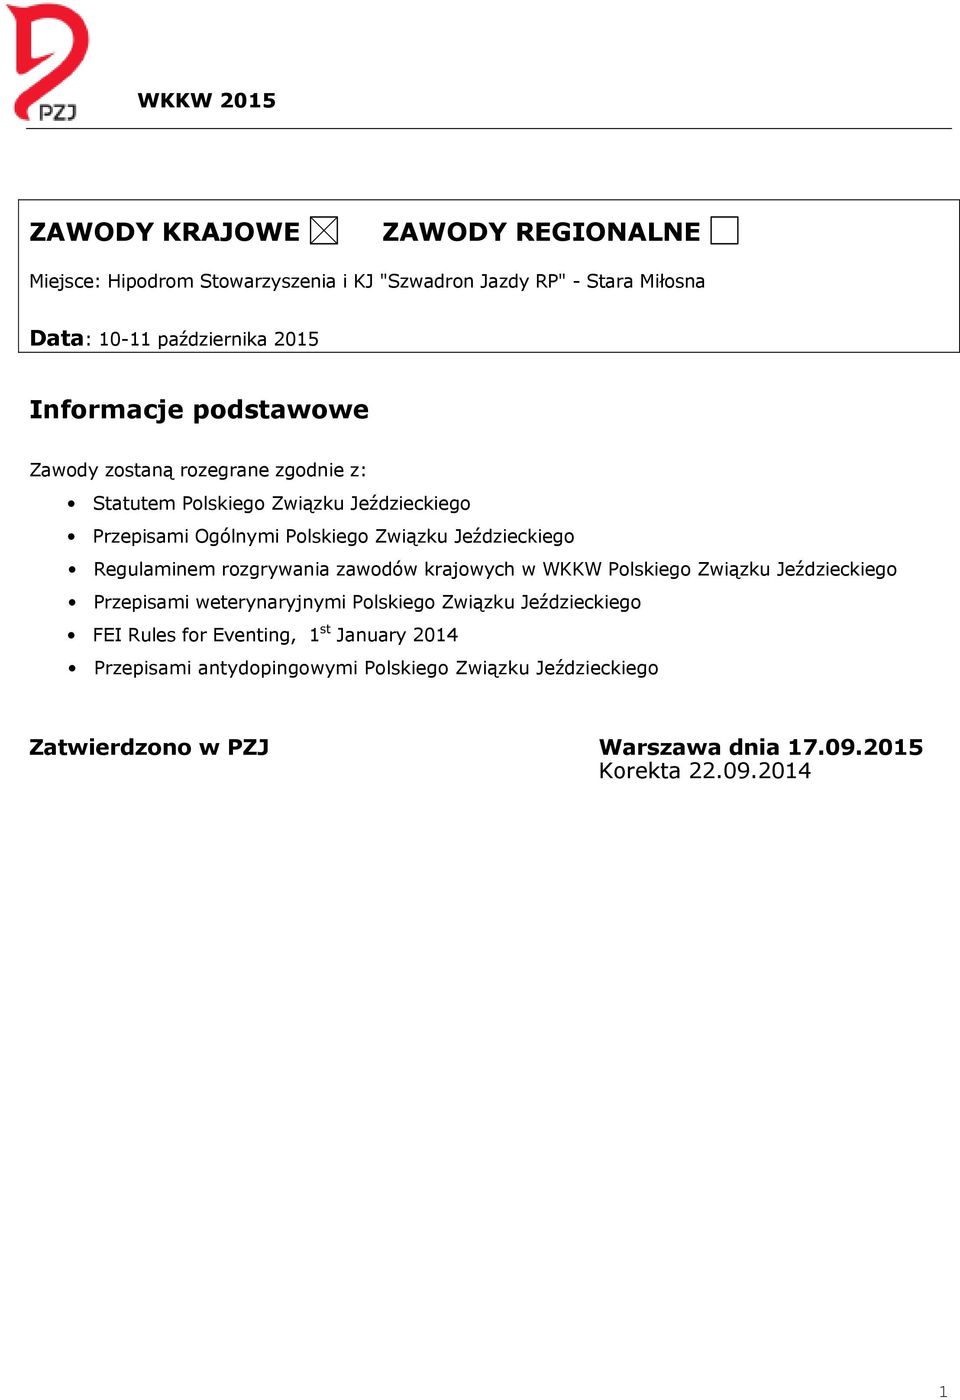 Regulaminem rozgrywania zawodów krajowych w WKKW Polskiego Związku Jeździeckiego Przepisami weterynaryjnymi Polskiego Związku Jeździeckiego FEI